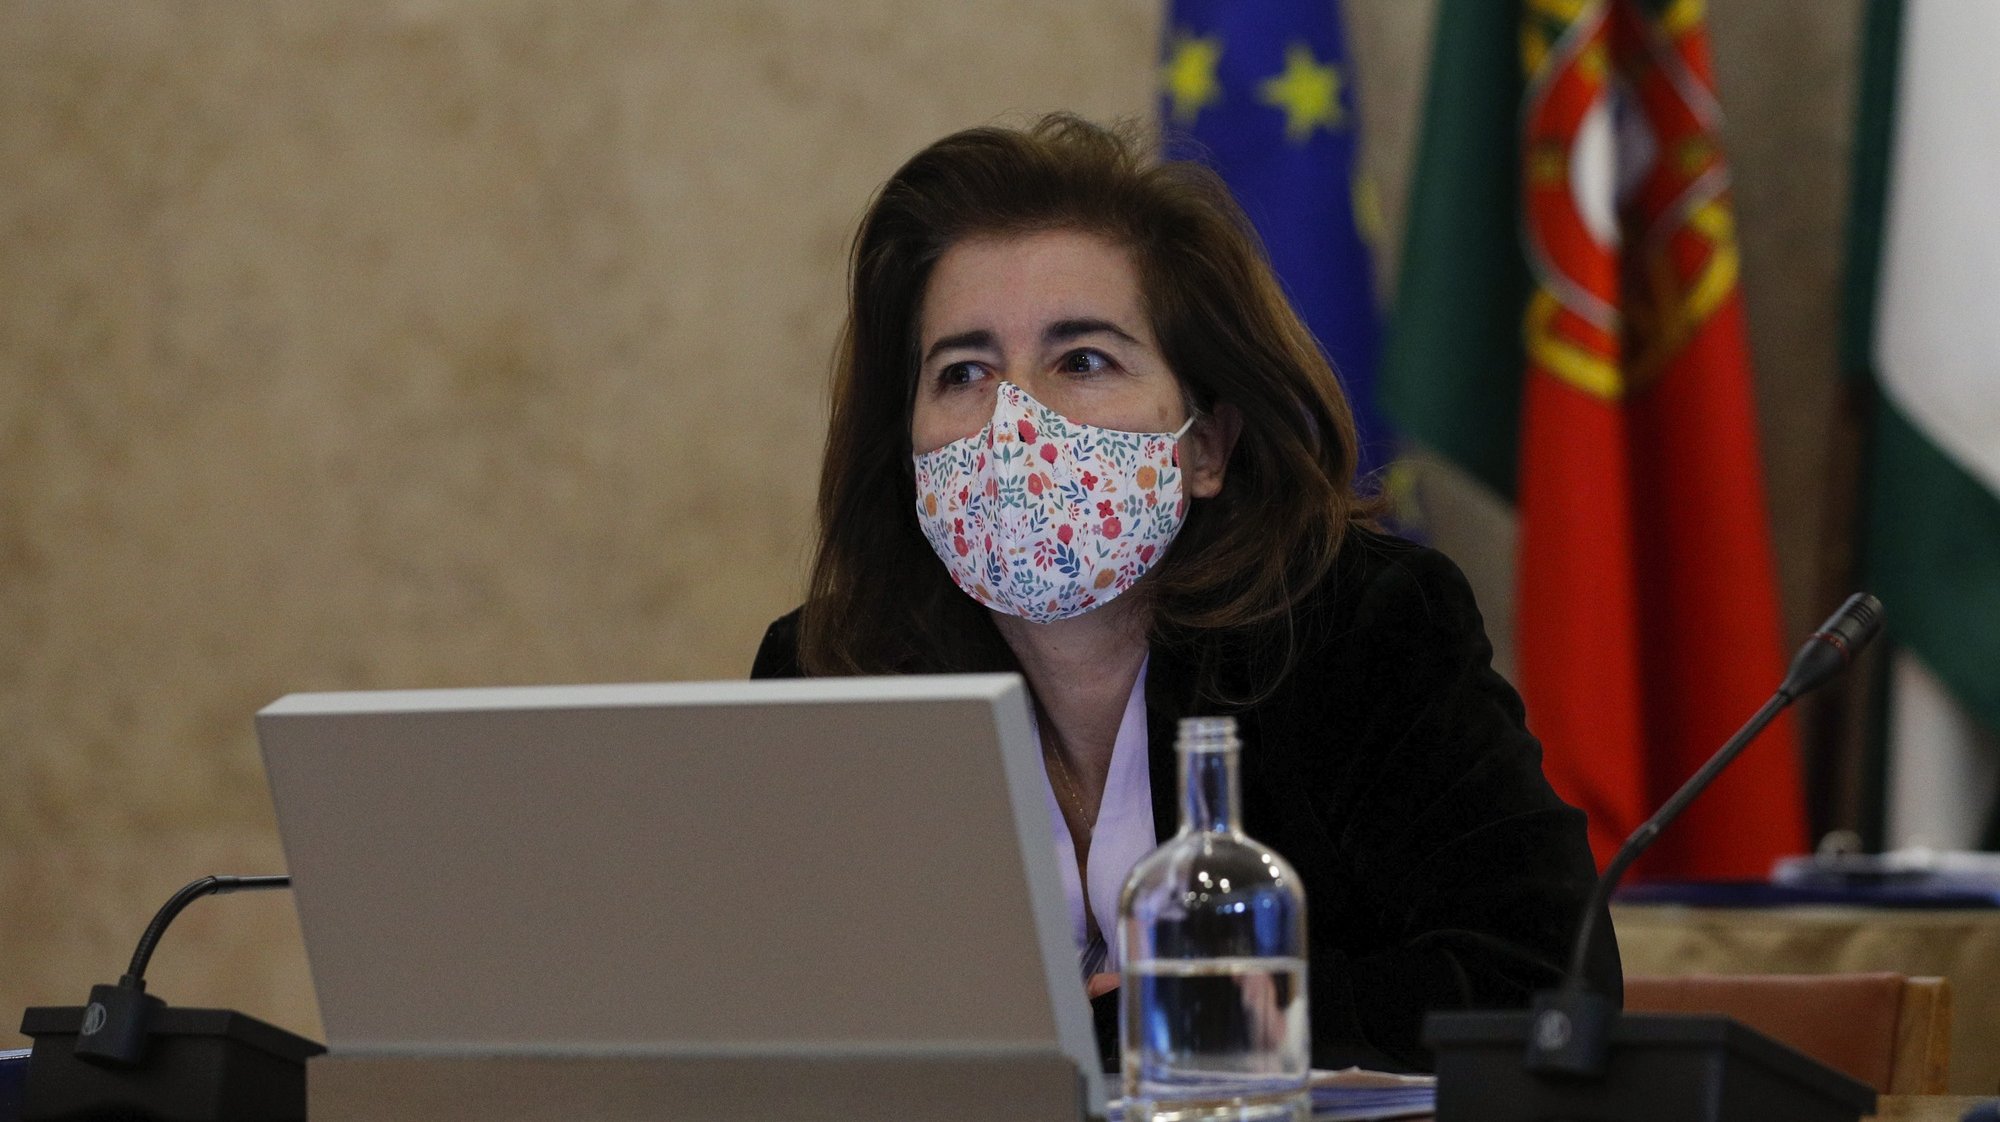 A ministra do Trabalho, Solidariedade e Segurança Social, Ana Mendes Godinho, durante a sua audição perante a Comissão de Trabalho e Segurança Social, na Assembleia da República, em Lisboa, 10 de fevereiro de 2021. ANTÓNIO COTRIM/LUSA